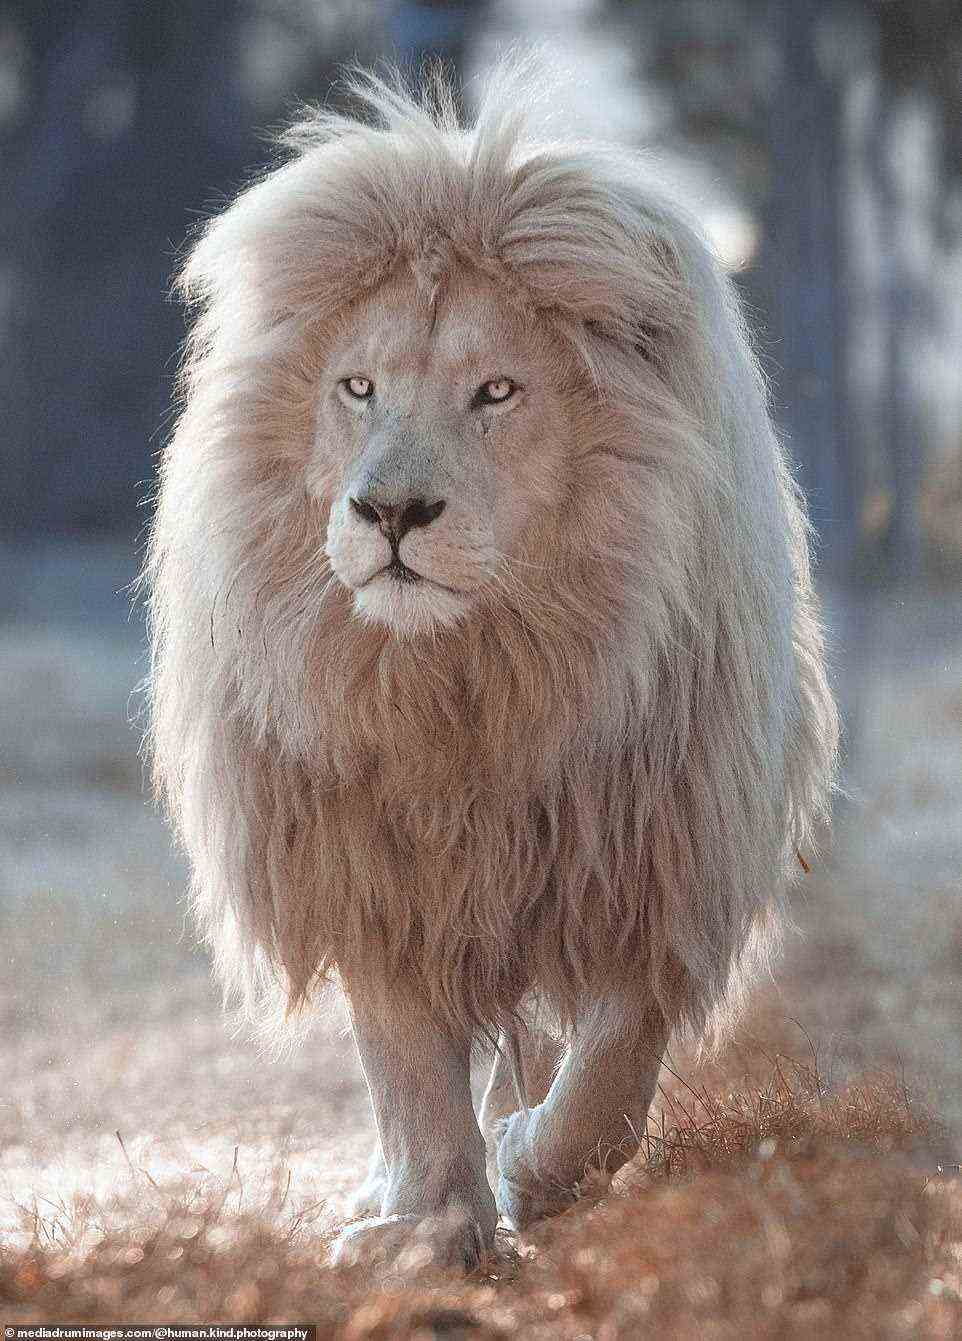 Das ungewöhnliche weiße Aussehen des Löwen wird durch einen als Leuzismus bekannten Zustand verursacht, der bei Tieren zu einem teilweisen Verlust der Pigmentierung führt